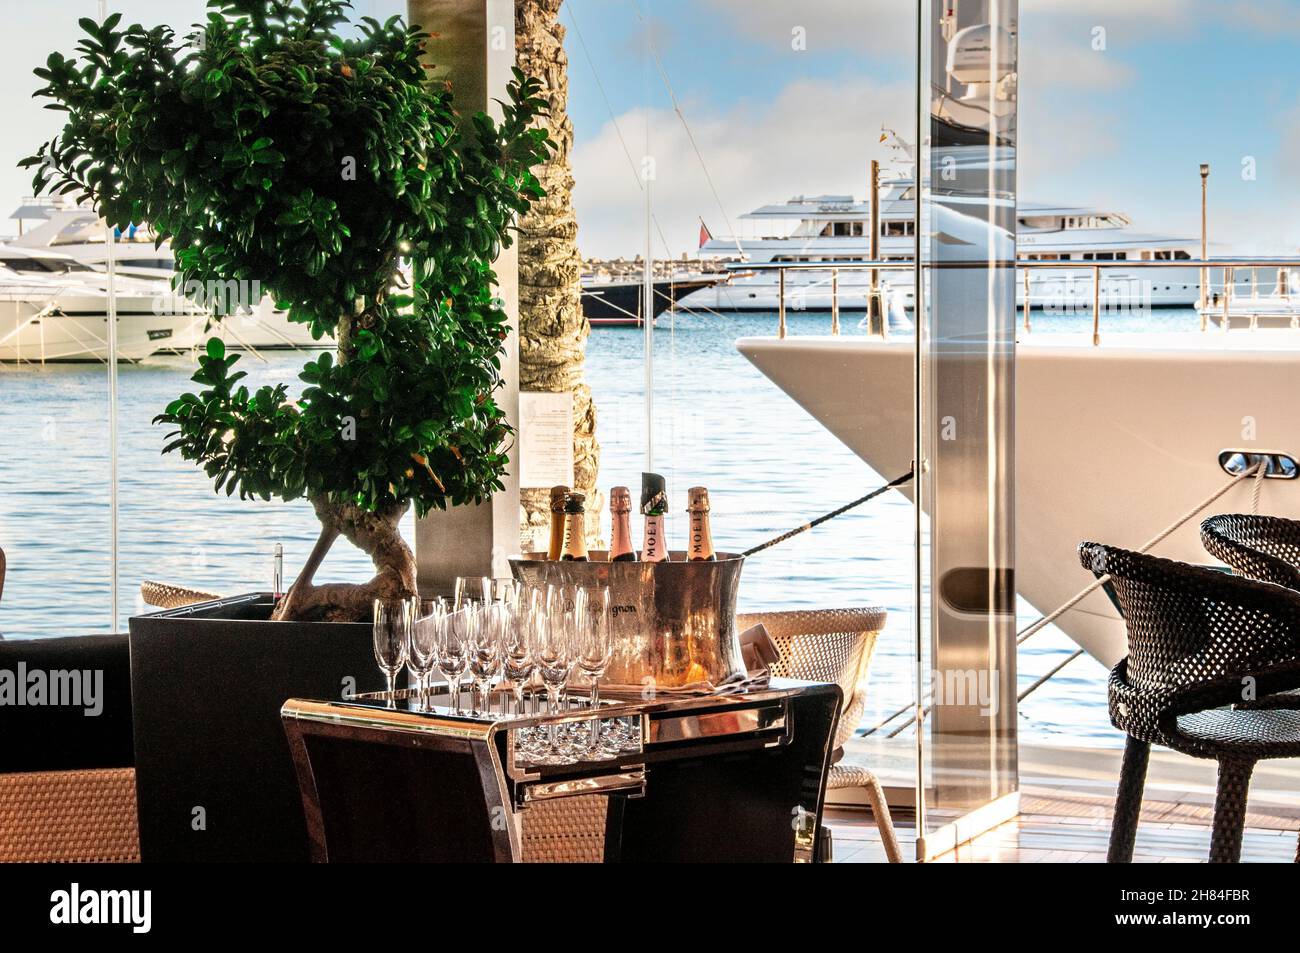 Luxuriöse Champagner-Bar im Marina Resort Puerto Portals mit Superyachten, die im Hintergrund festgemacht sind, mit Champagner-Flaschen und Gläsern, die für die wohlhabende Kundschaft Portals Nous Mallorca Spanien bereit sind Stockfoto